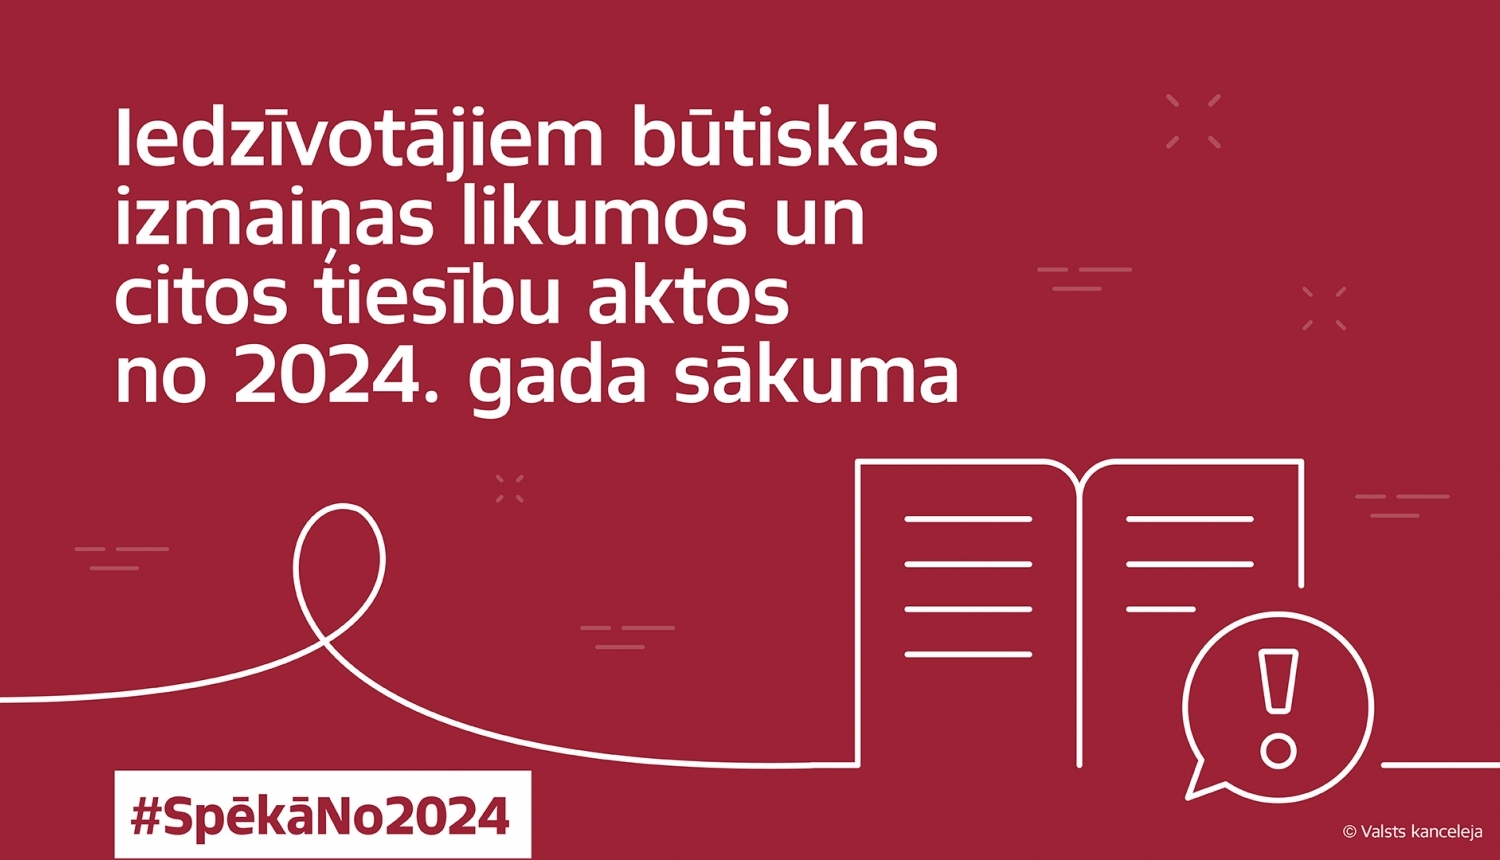 Uz sarkana forna uzraksts "Iedzīvotājiem būtiskas izmaiņas likumos un citos tiesību aktos no 2024. gada sākuma"